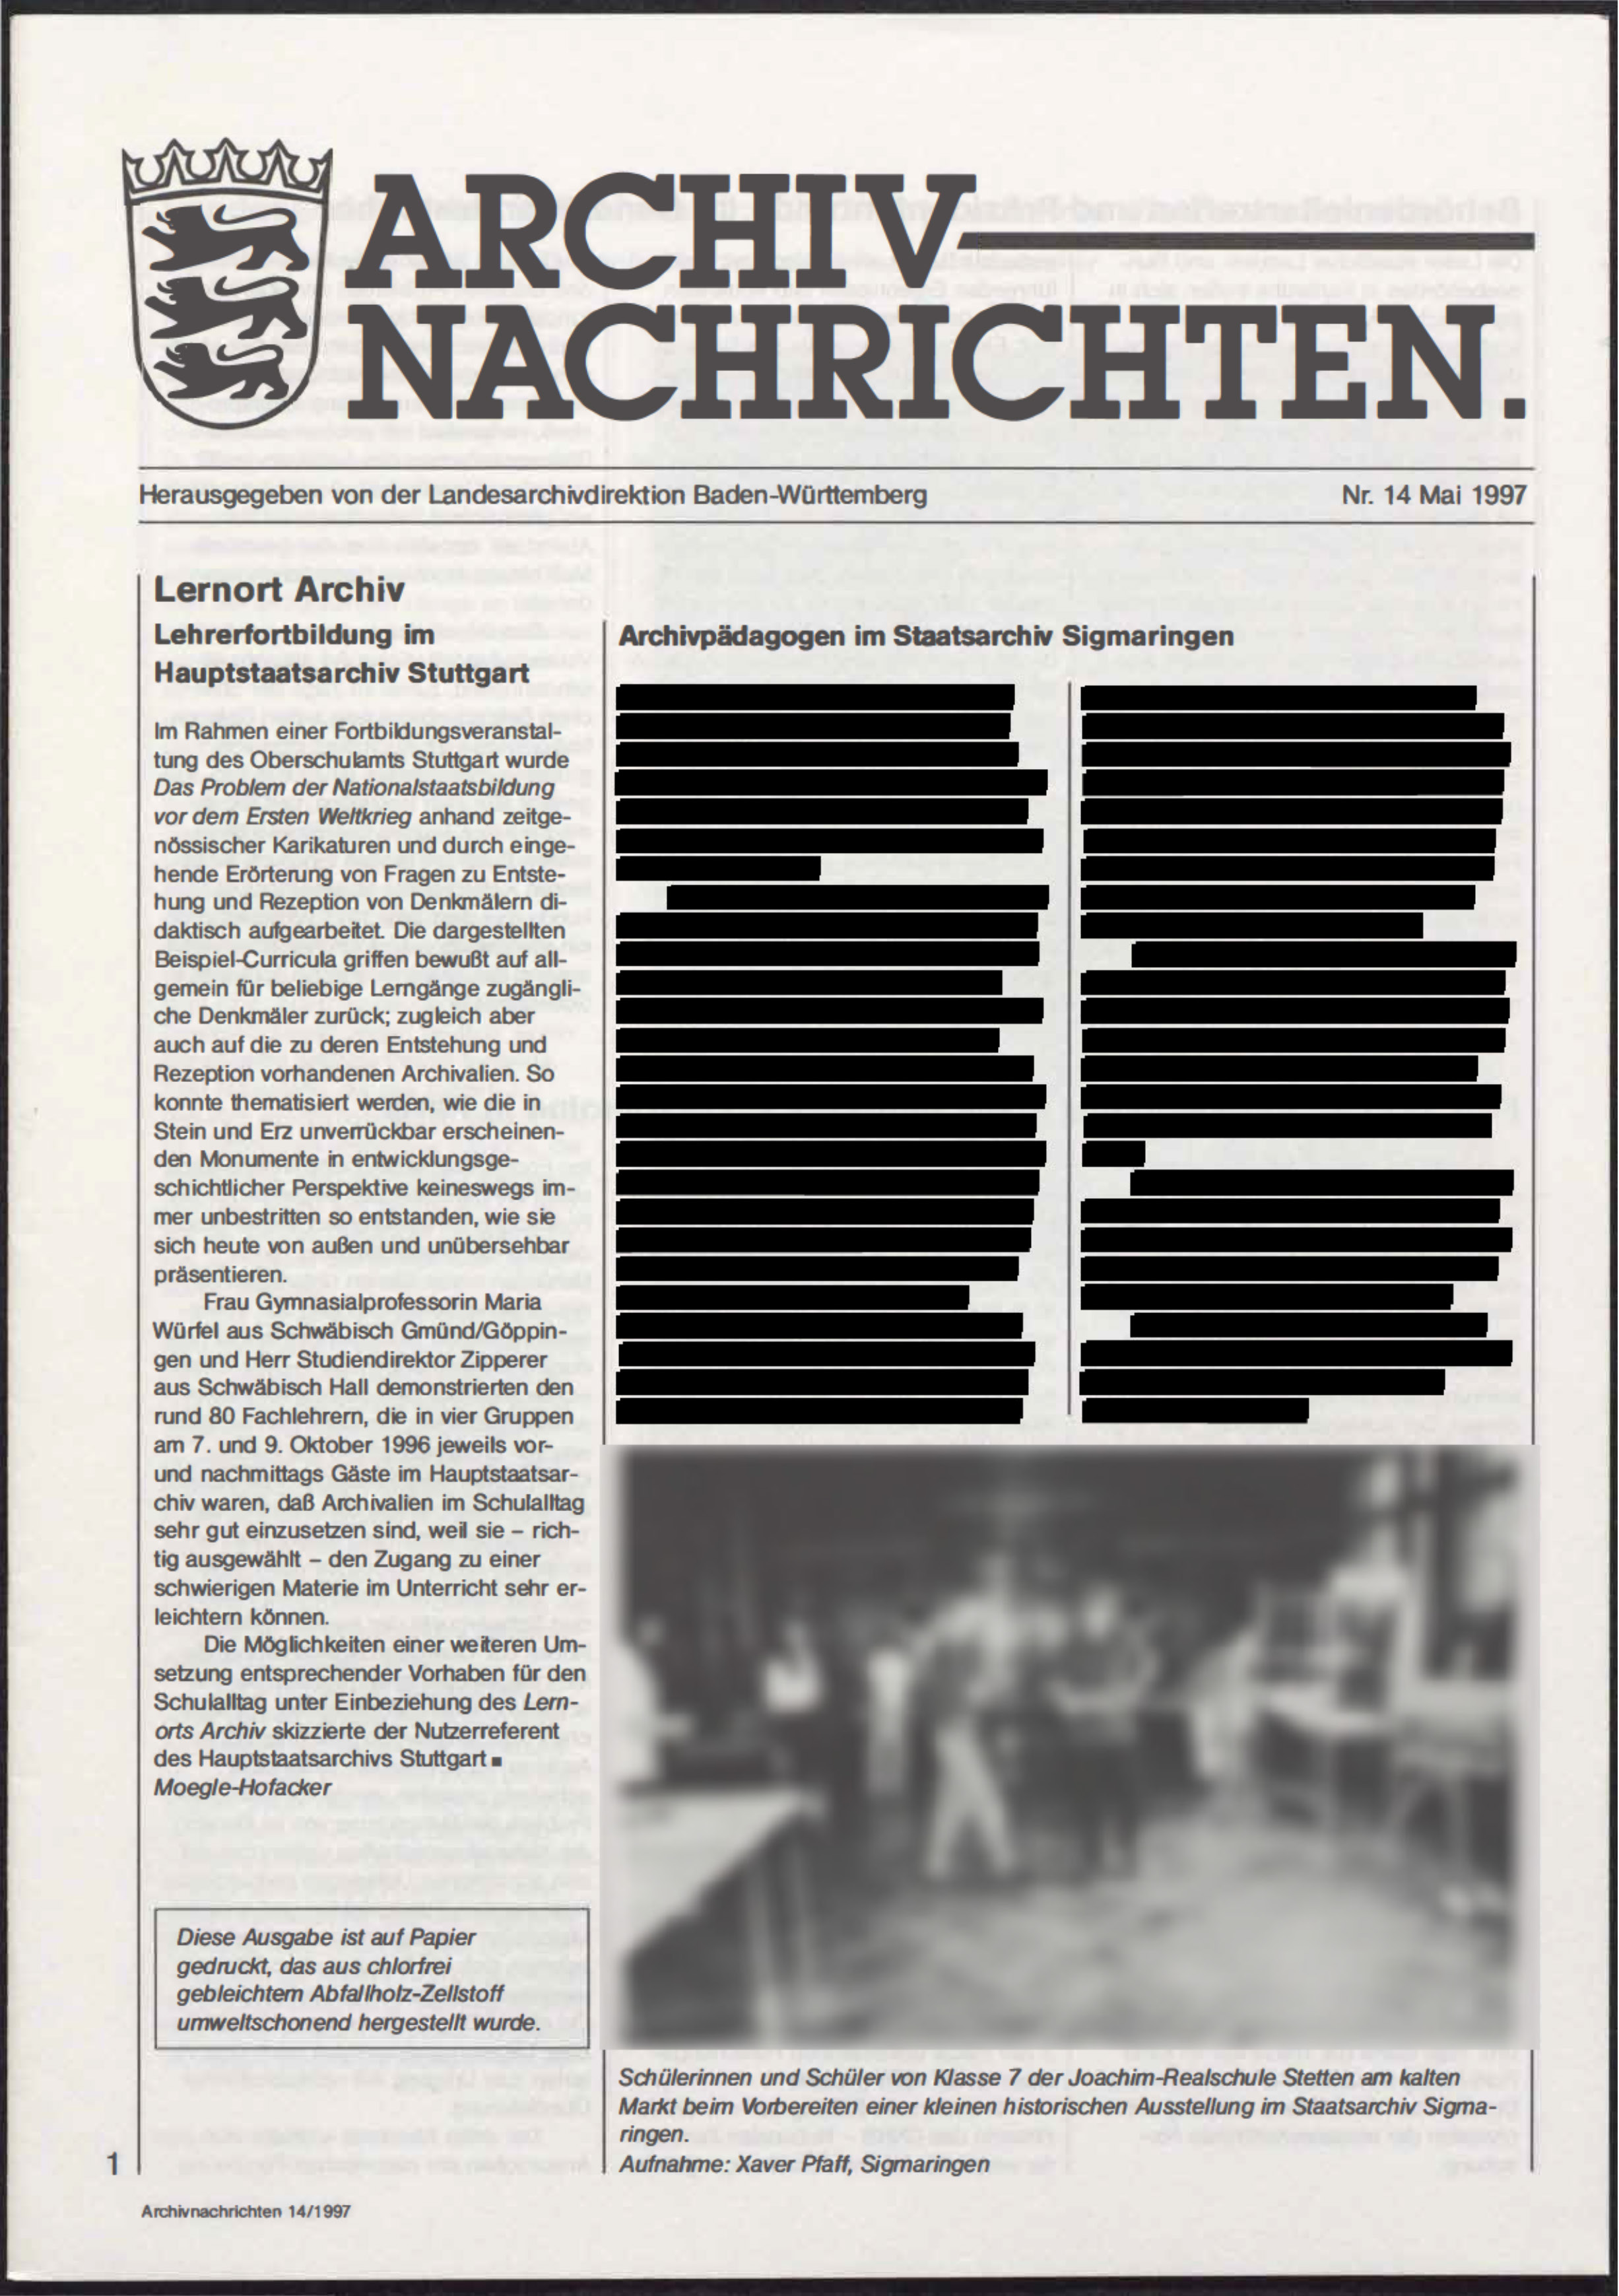                     Ansehen Nr. 14 (1997): Archivnachrichten
                